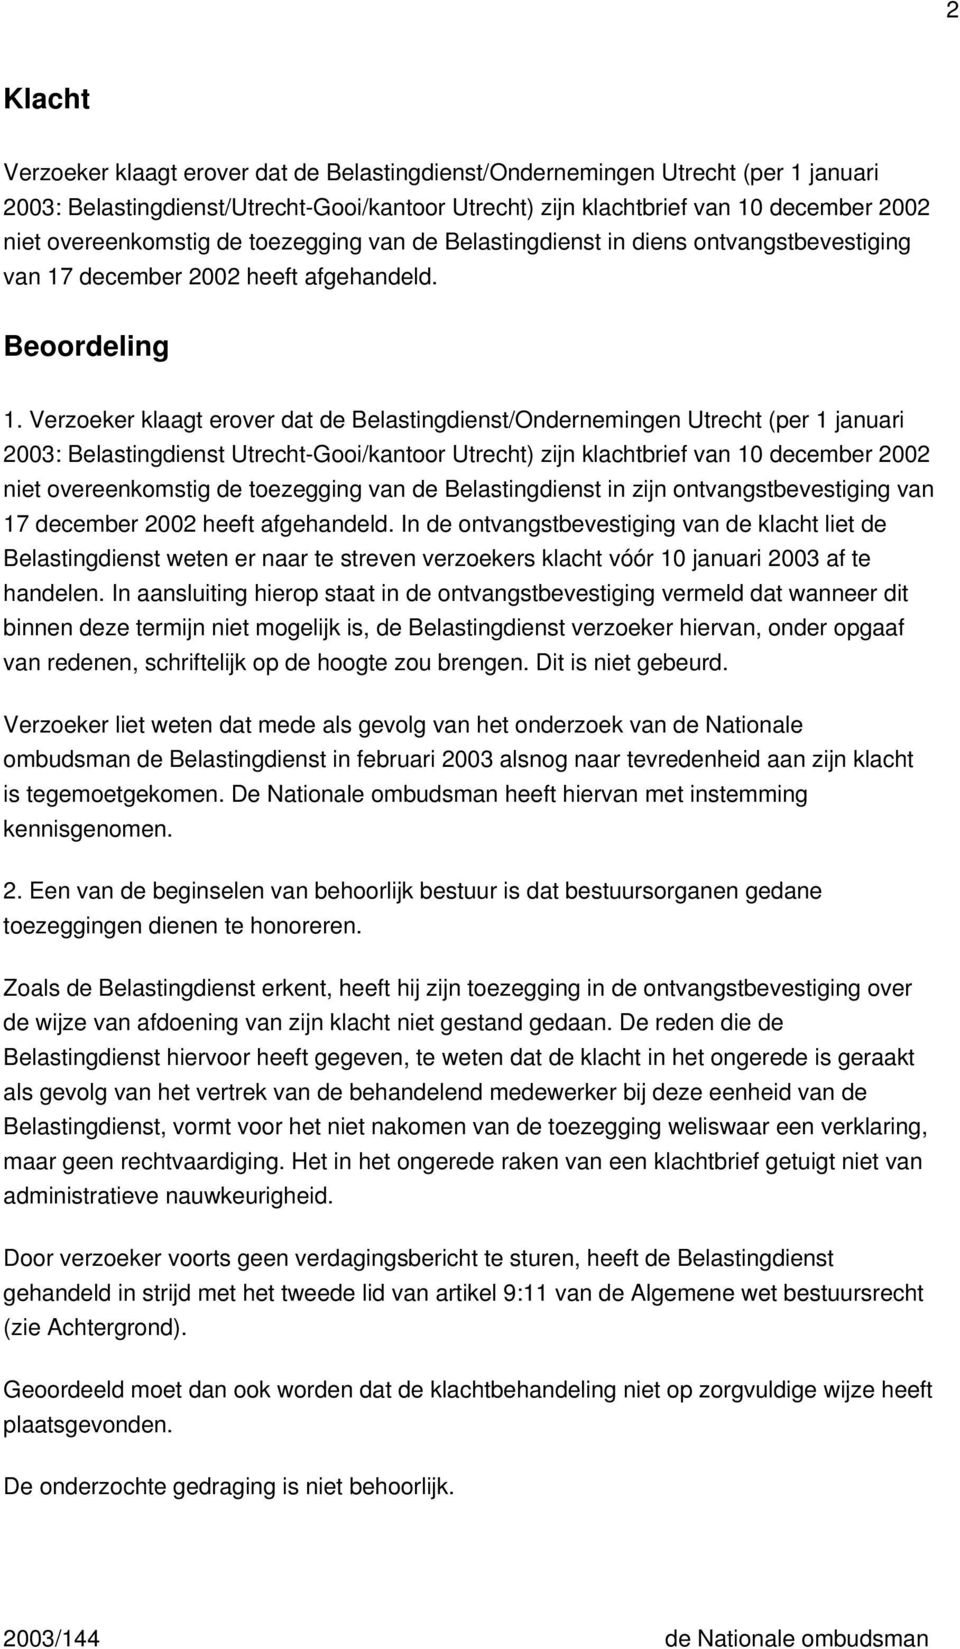 Verzoeker klaagt erover dat de Belastingdienst/Ondernemingen Utrecht (per 1 januari 2003: Belastingdienst Utrecht-Gooi/kantoor Utrecht) zijn klachtbrief van 10 december 2002 niet overeenkomstig de